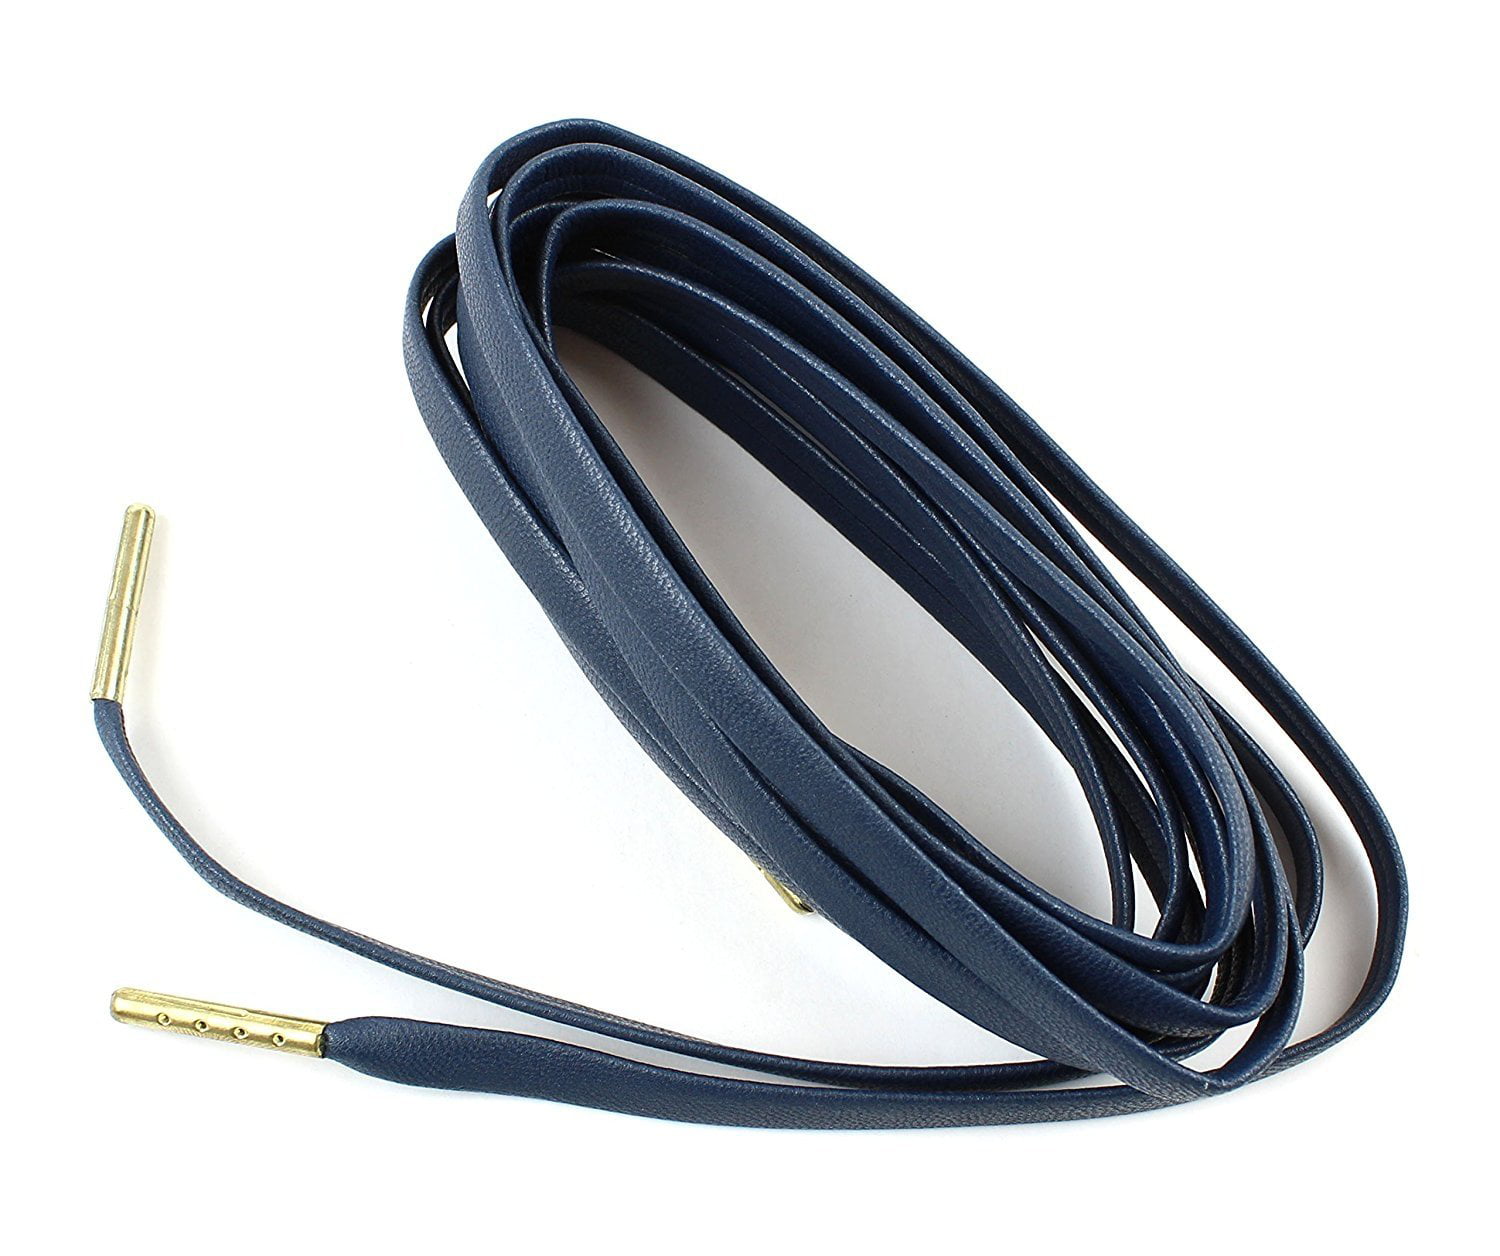  BCB Wear Flat Sheepskin Leather Shoelaces 1/4 Wide 51